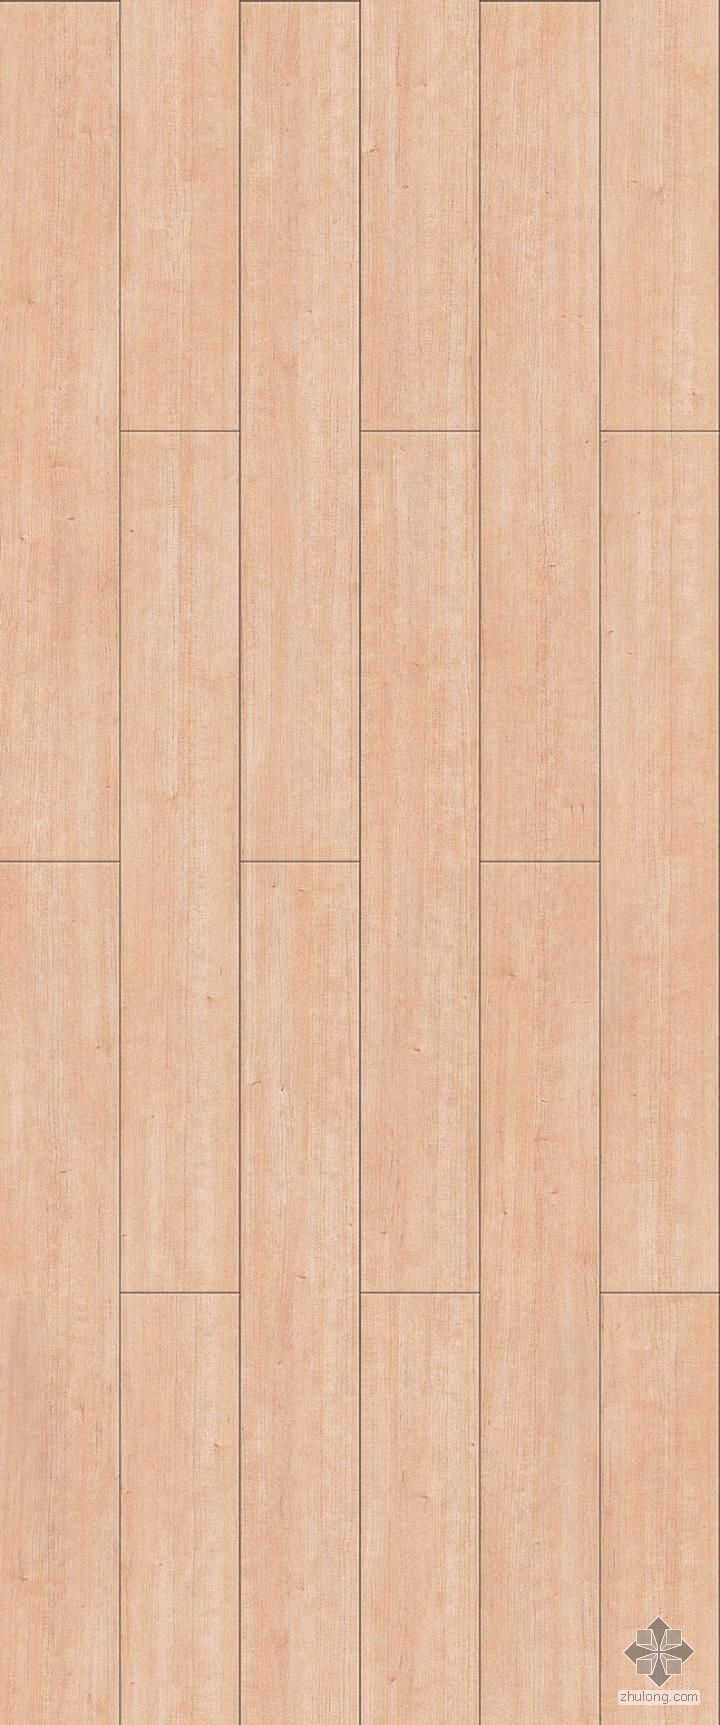 室内木地板材质贴图资料下载-木地板